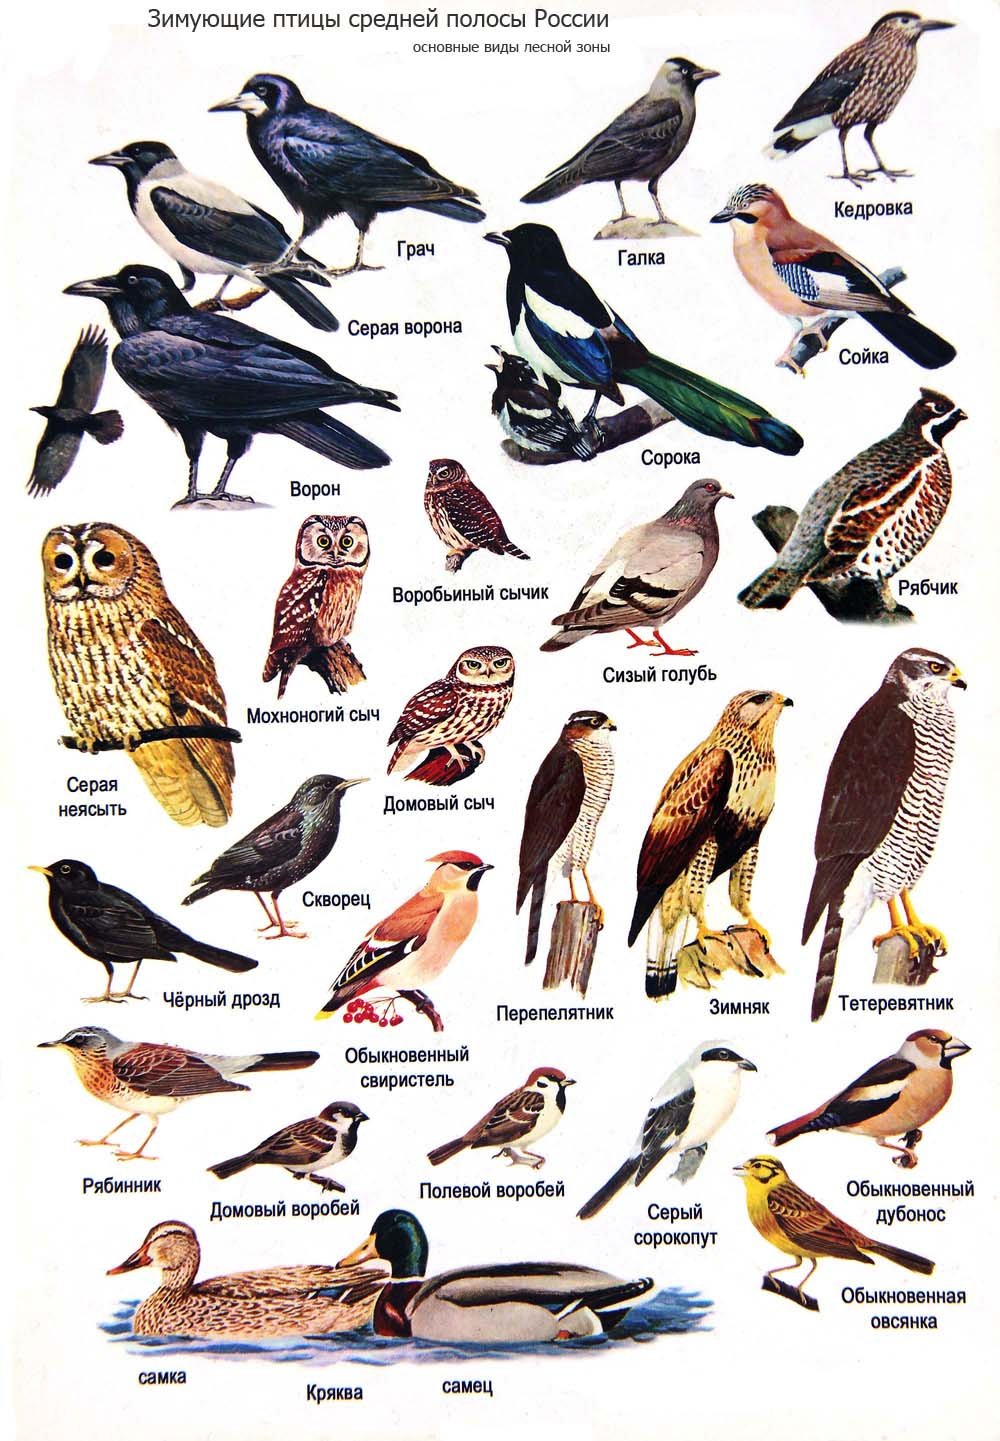 хищные птицы иркутской области фото с названиями